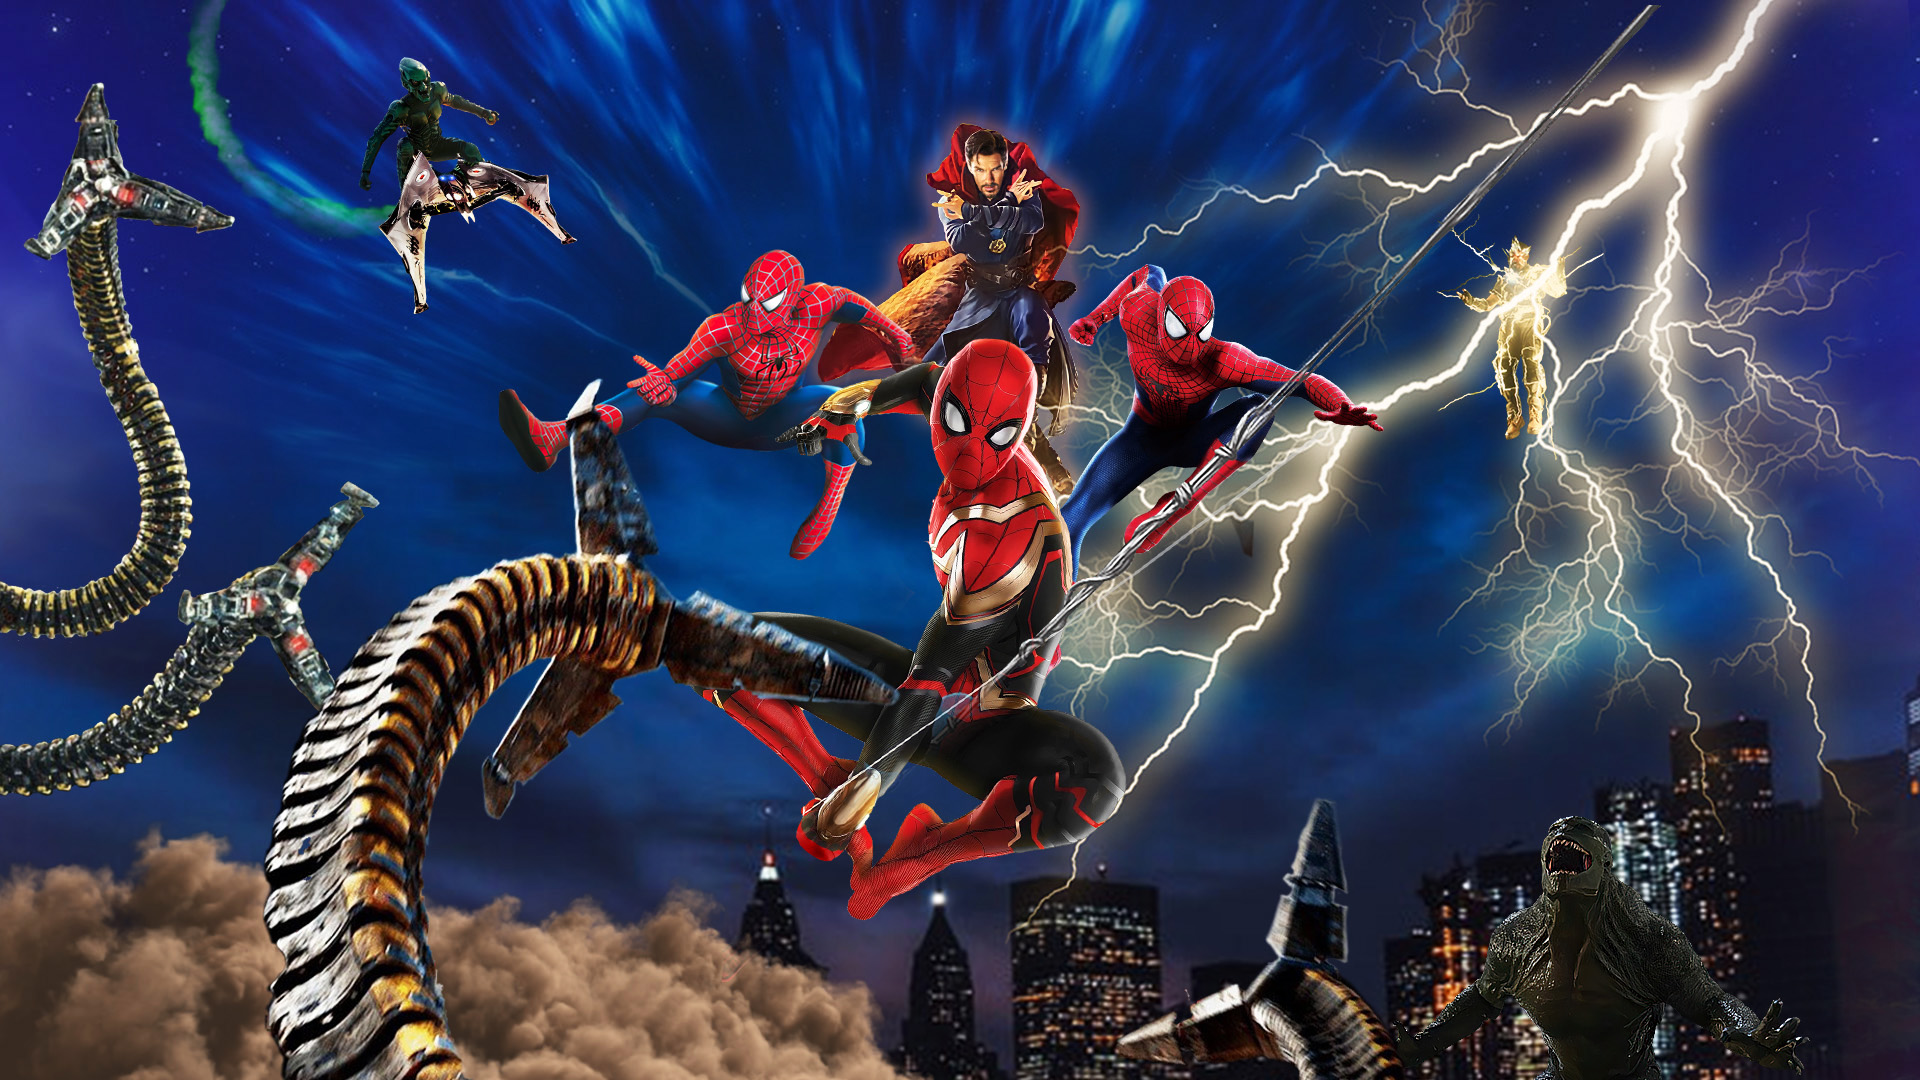 Spider-man: No Way Home Wallpaper by Thekingblader995 on DeviantArt